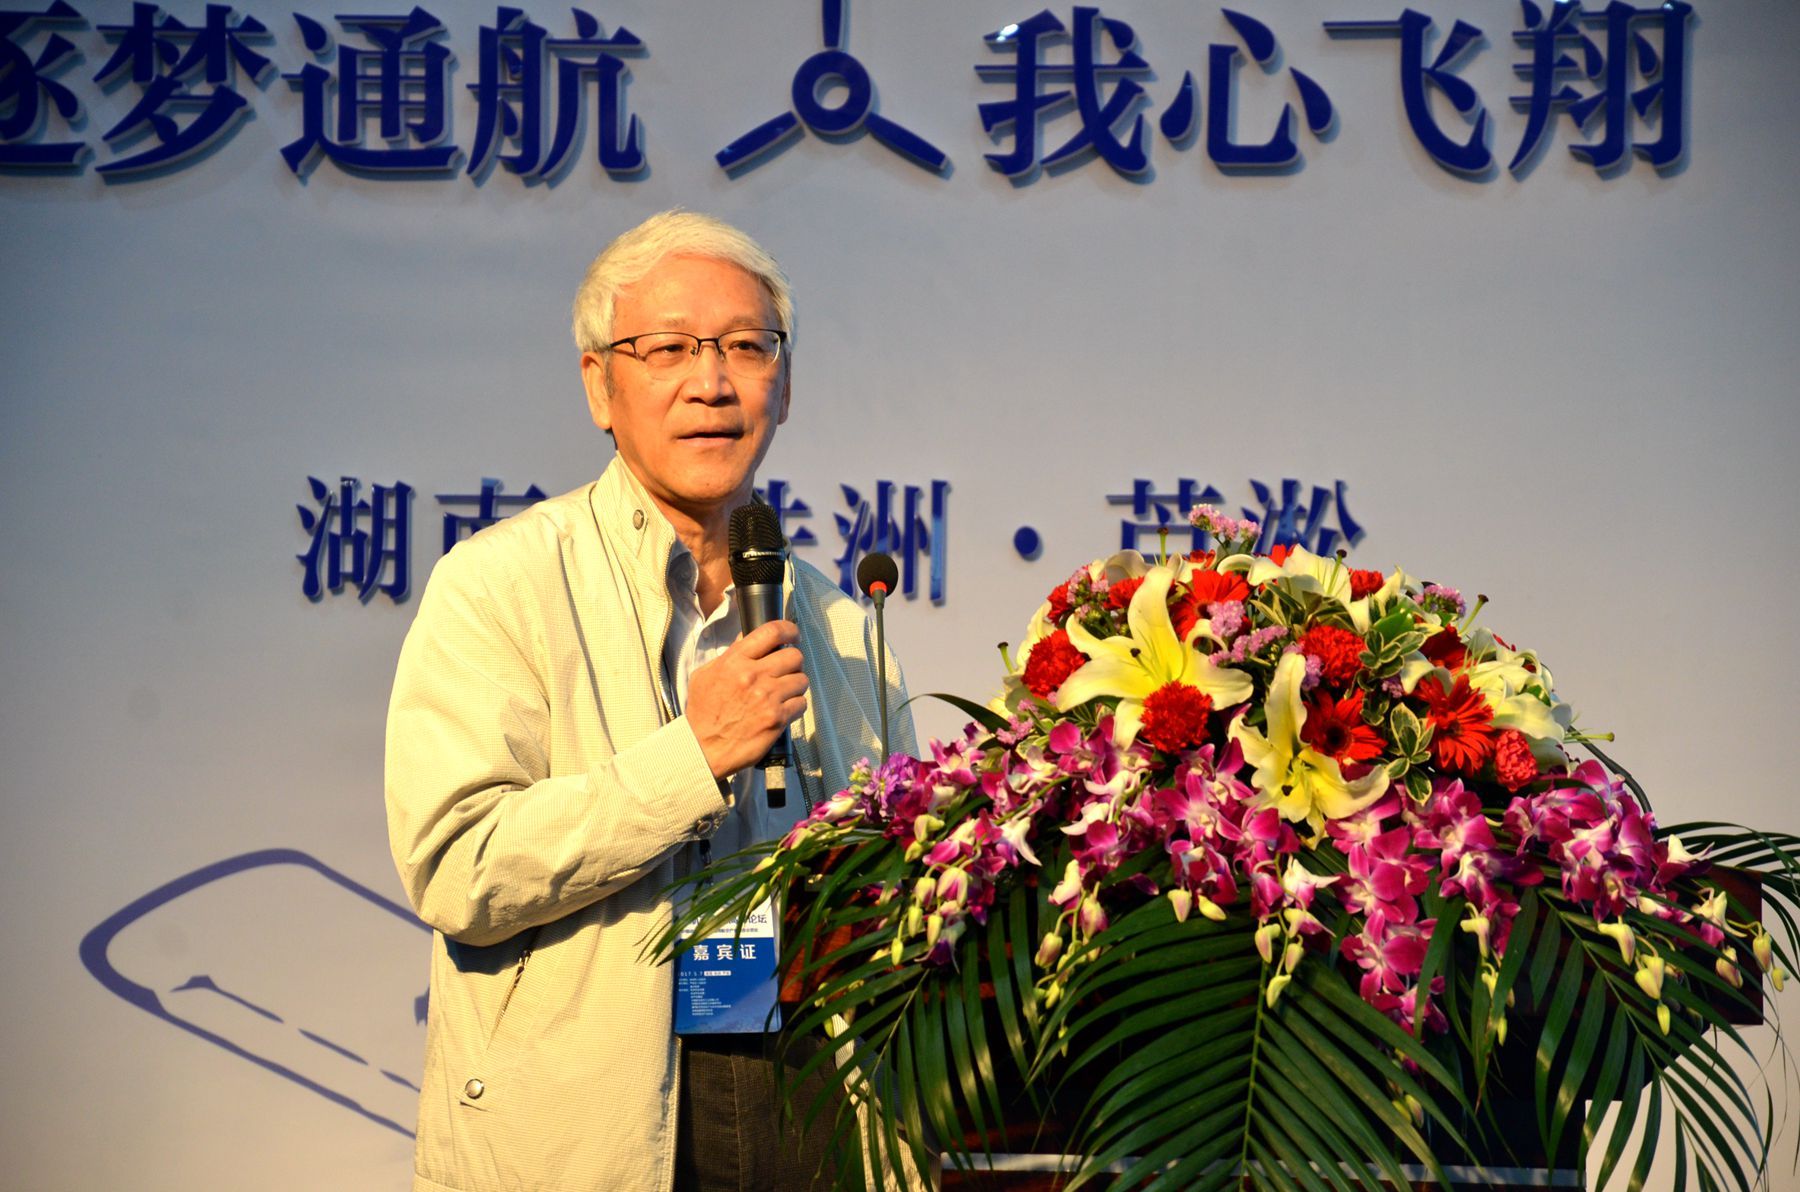 尹泽勇、刘大响等院士专家为株洲通航产业